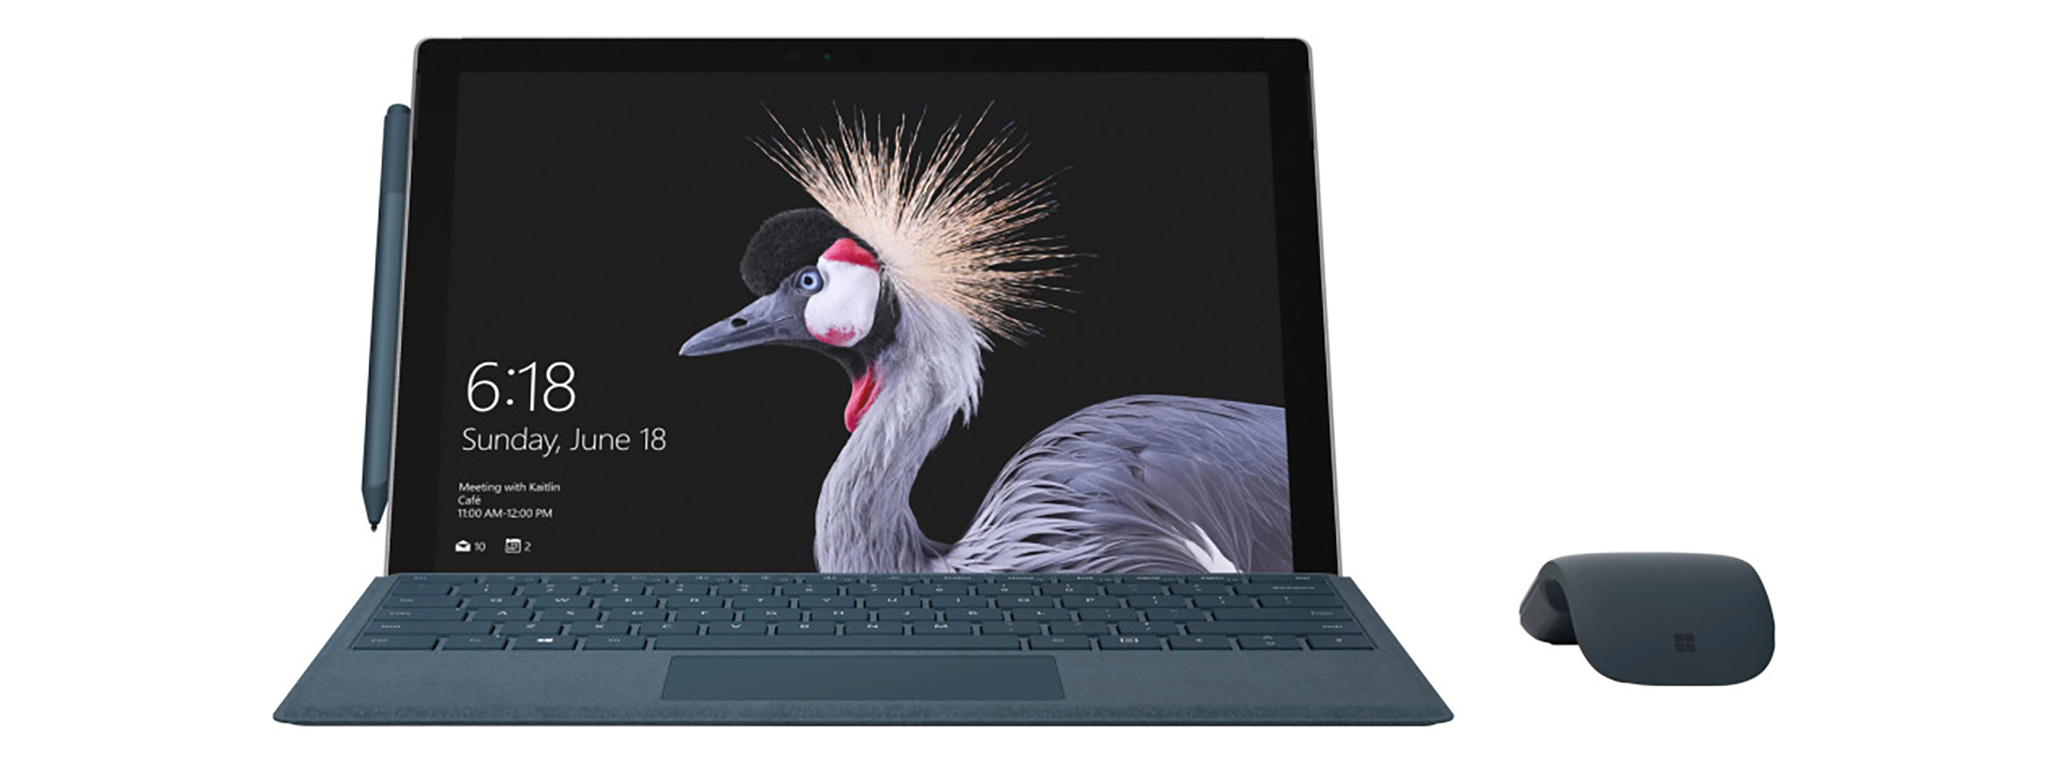 [Rò rỉ] Surface Pro 4 có bản nâng cấp cấu hình, phụ kiện có thêm màu mới?